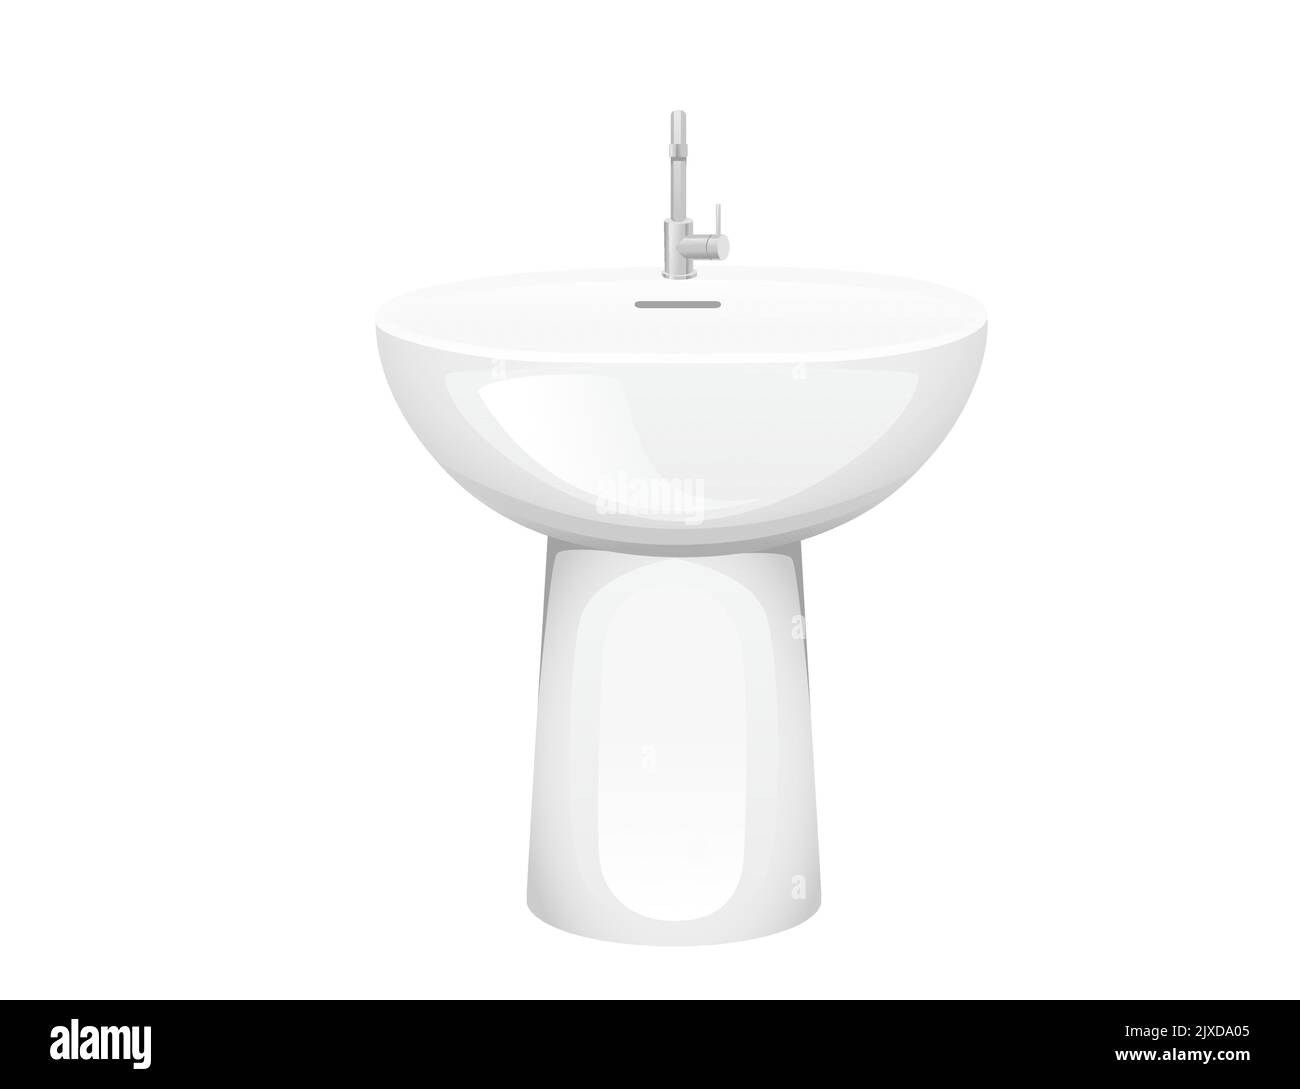 Évier moderne en céramique avec robinet en acier inoxydable illustration vectorielle isolée sur fond blanc équipement ménager pour la cuisine ou la salle de bains Illustration de Vecteur